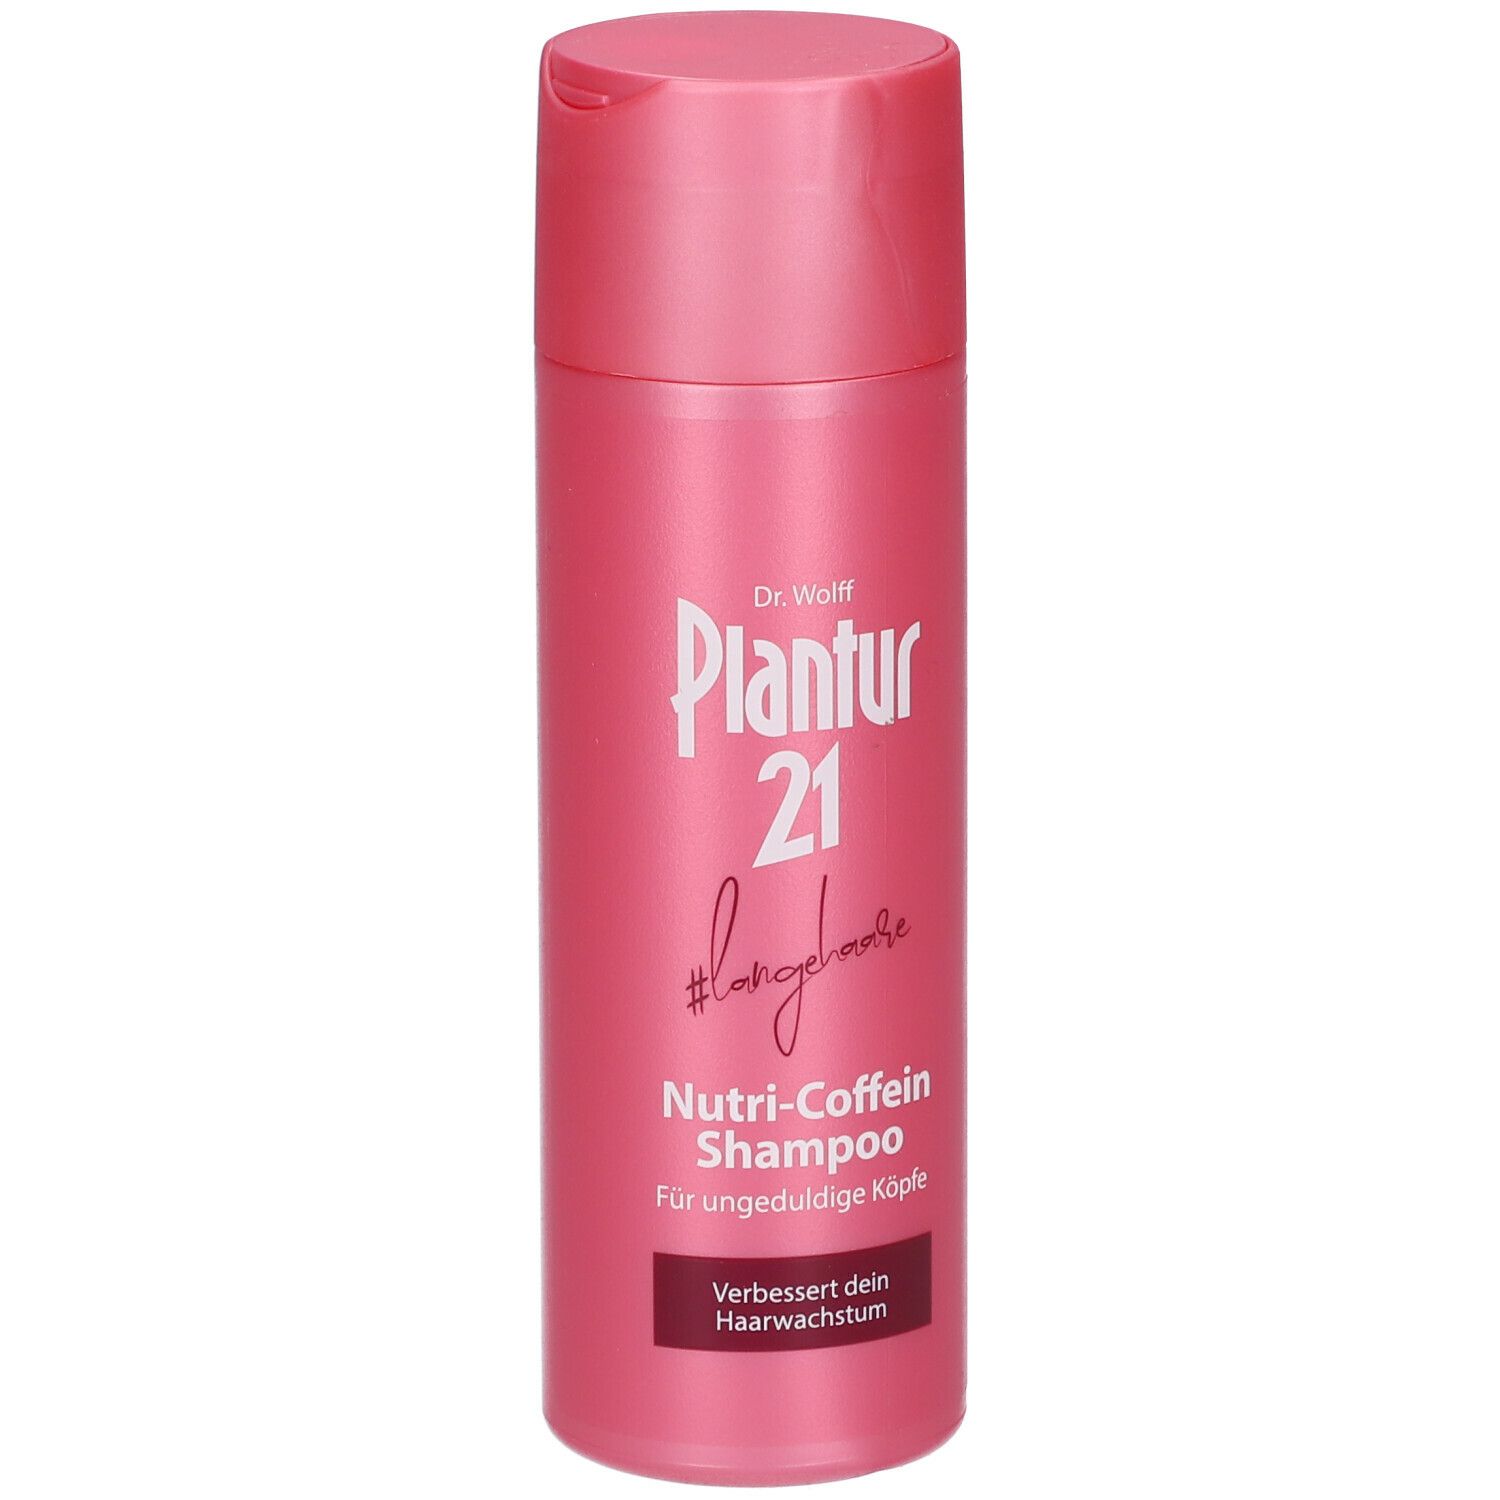 Plantur 21 #cheveuxlongs Shampooing Nutri-Caféine